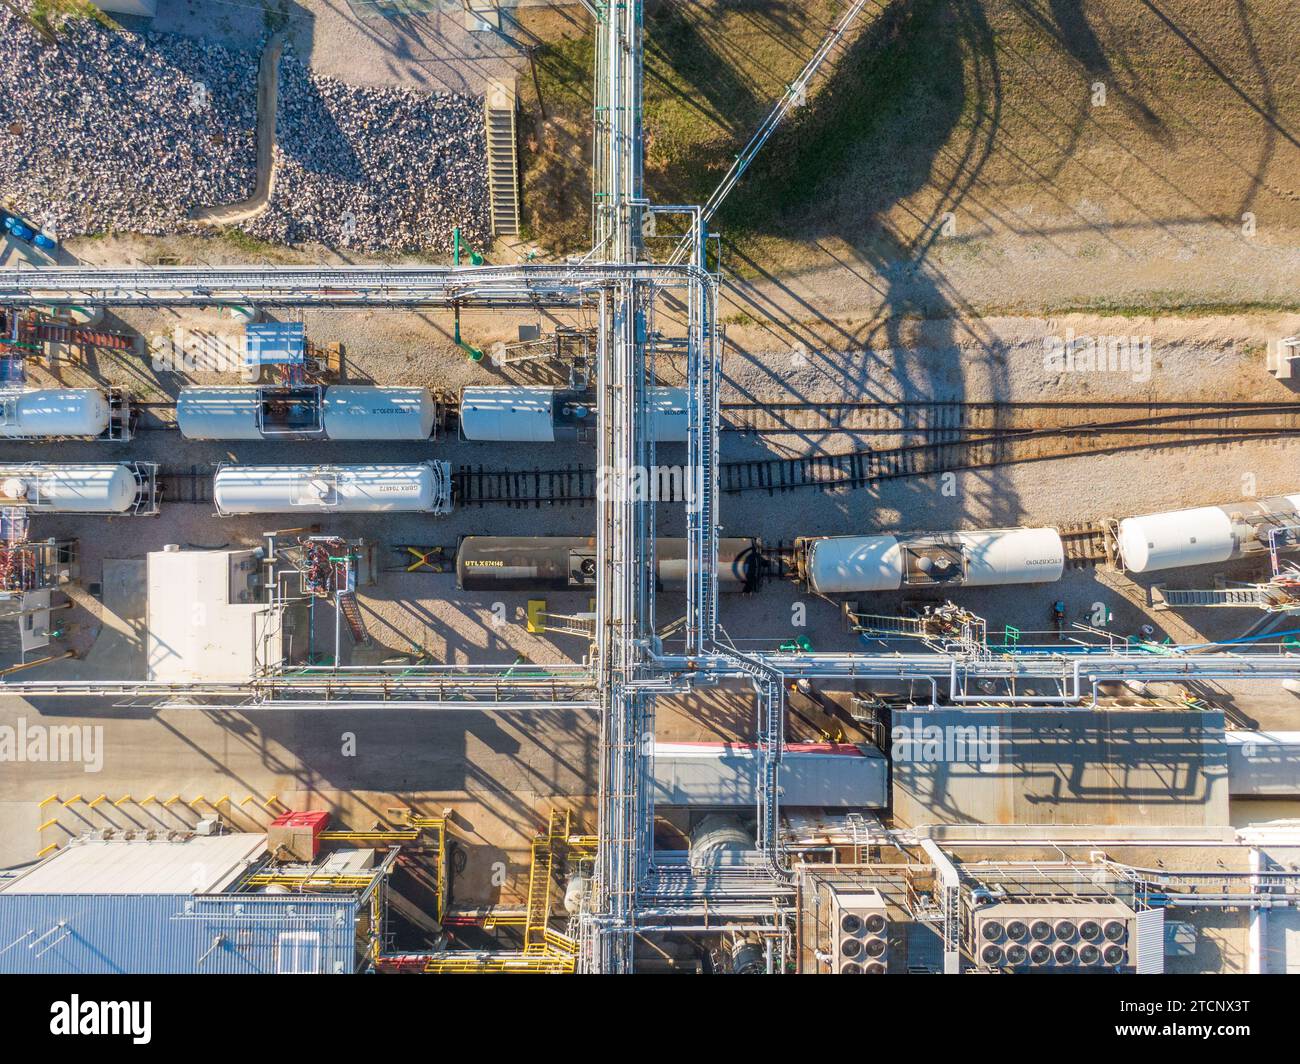 imágenes de drones de una gran fábrica de fabricación farmacéutica con muchas tuberías, ángulos fríos y sombras interesantes. Foto de stock